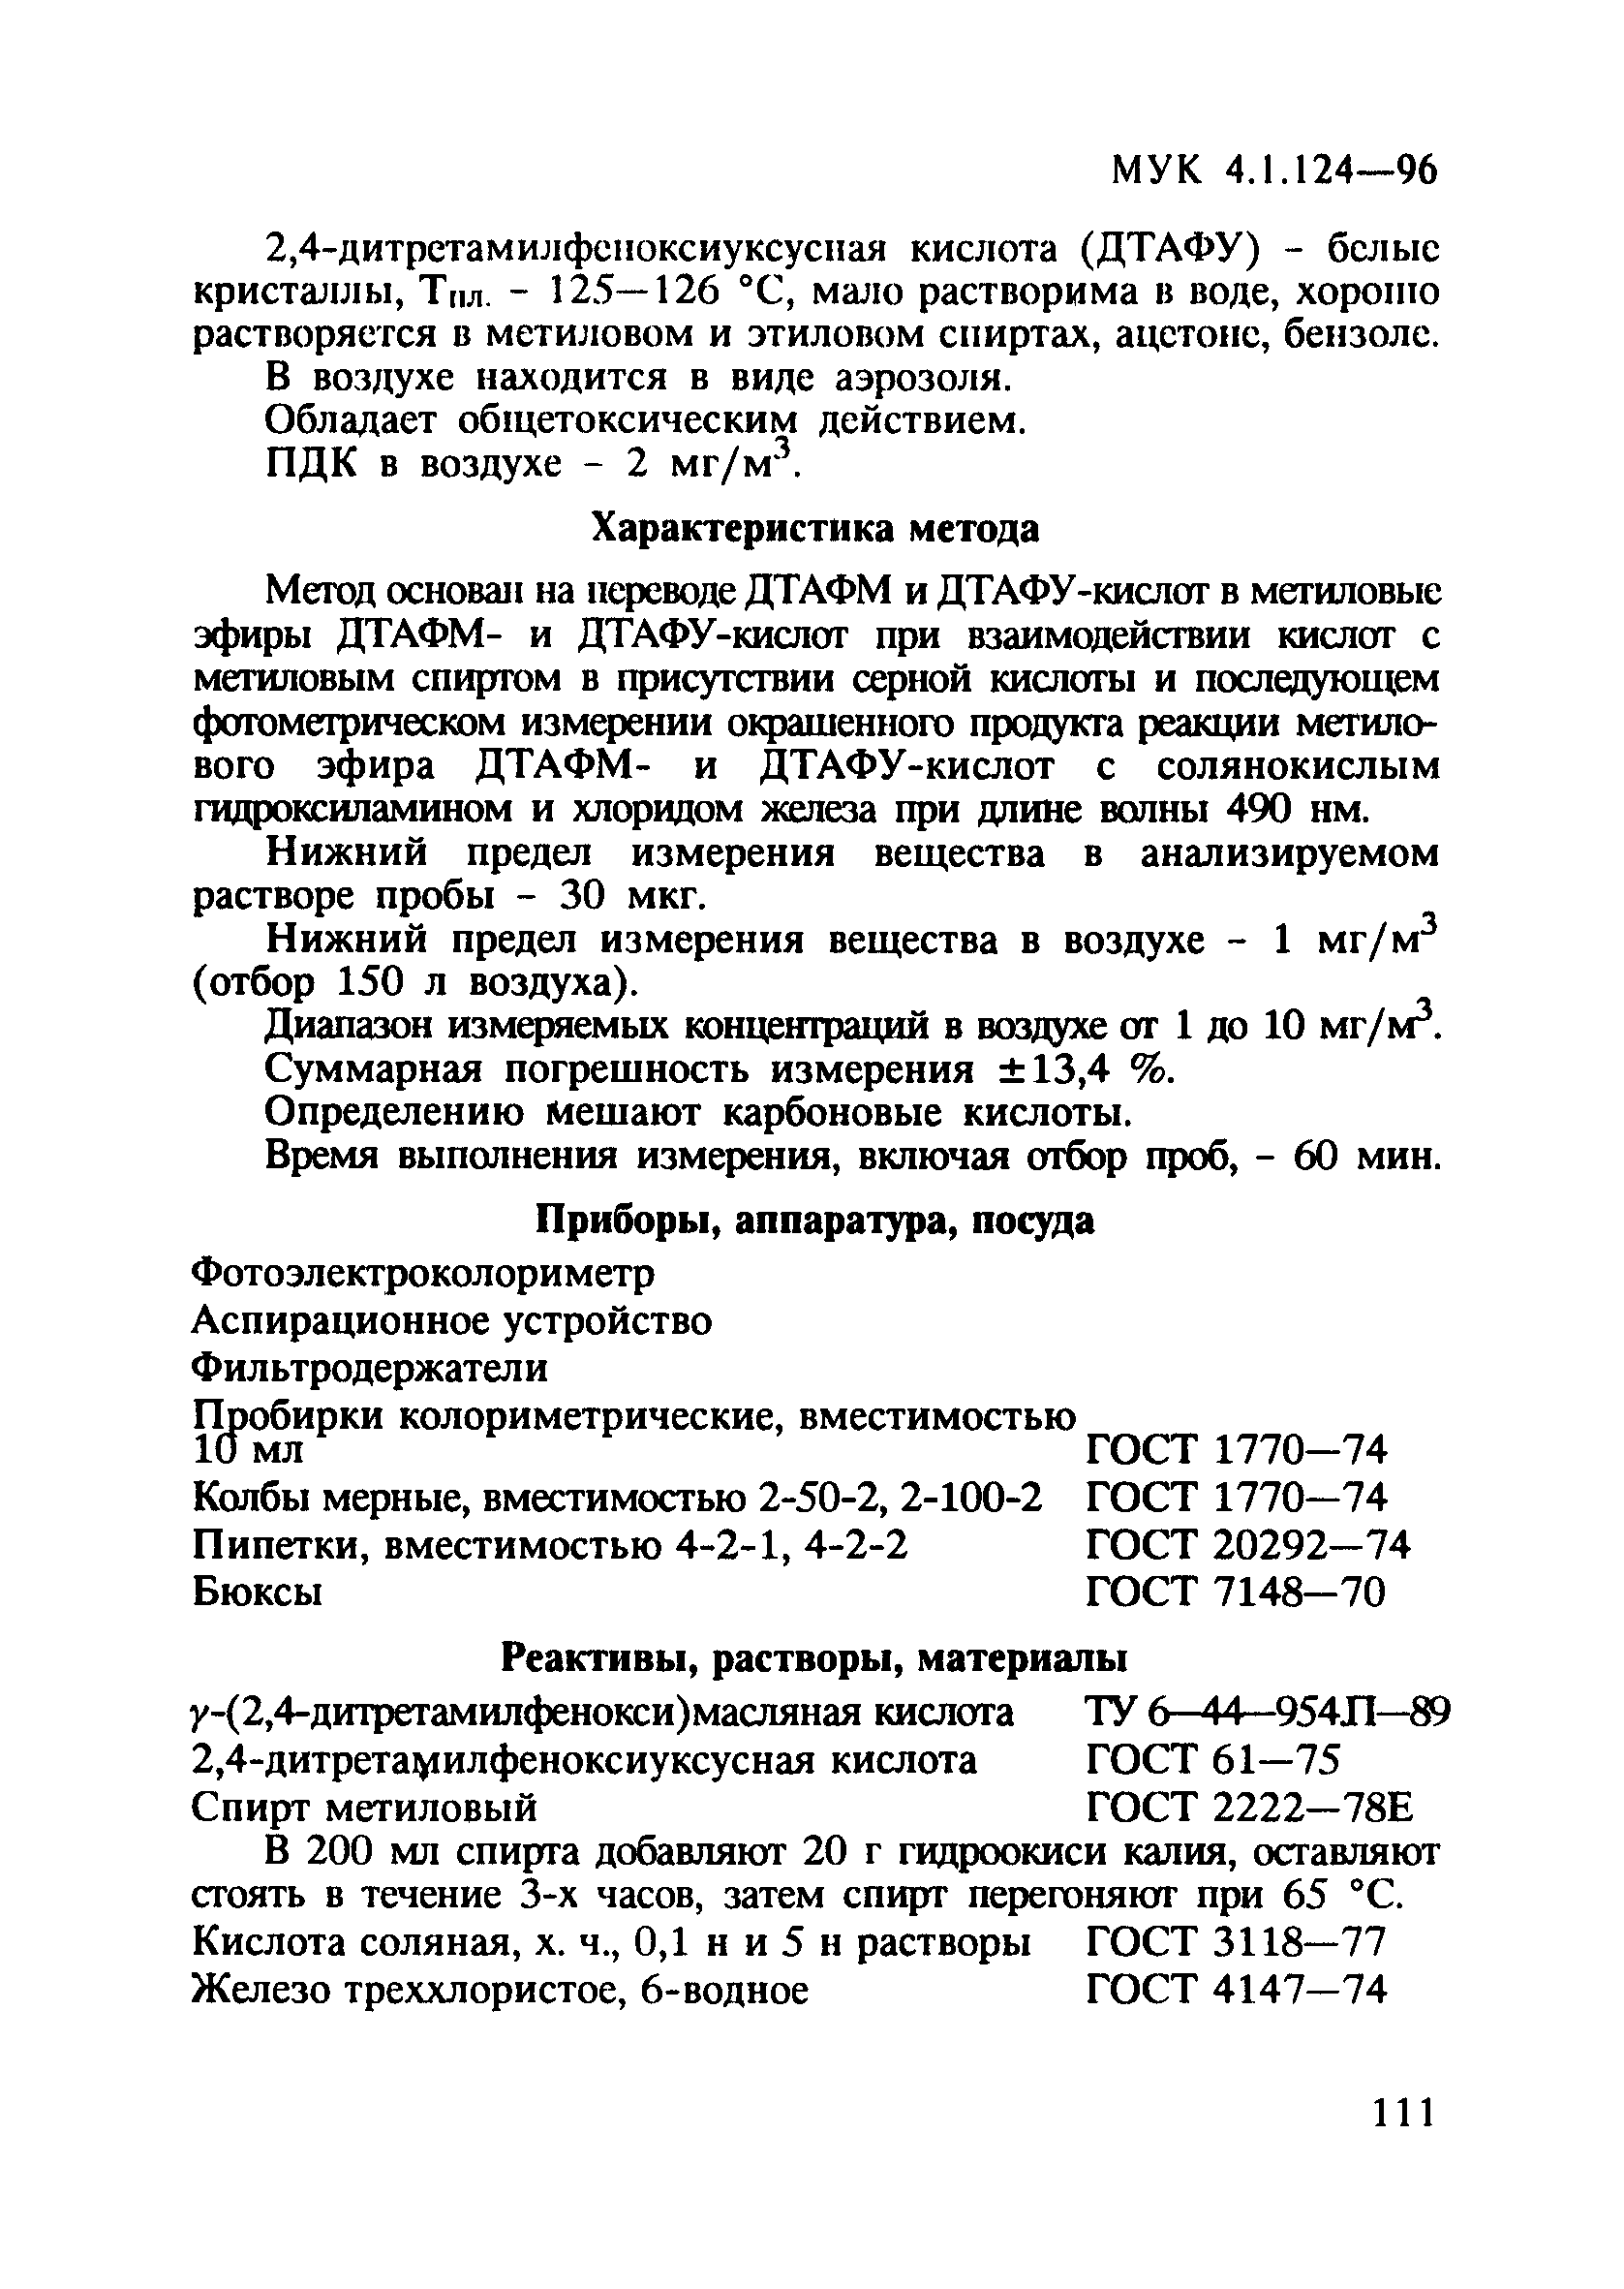 МУК 4.1.124-96